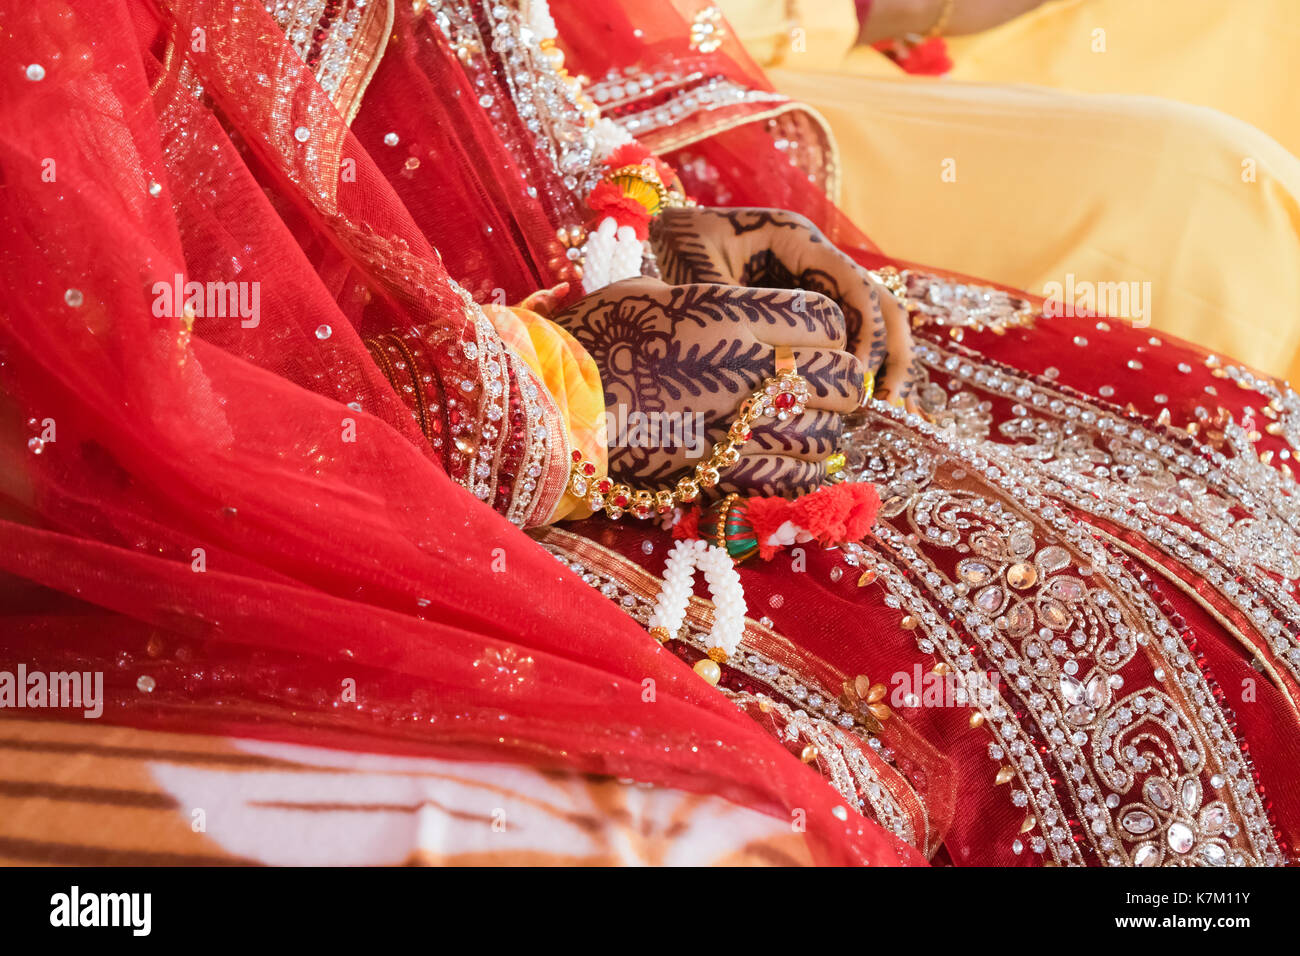 Questa immagine è stata scattata in un matrimonio indiano Foto Stock